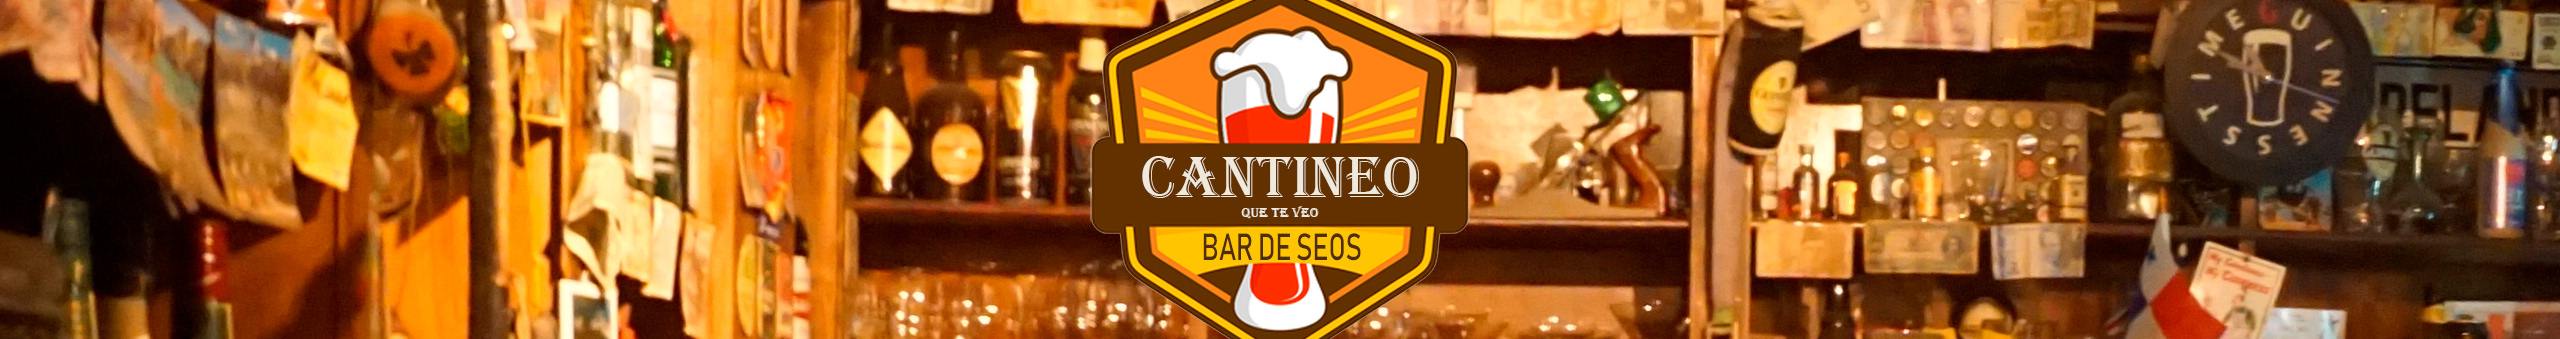 Profil-Banner von Cantineoqueteveo Madrid